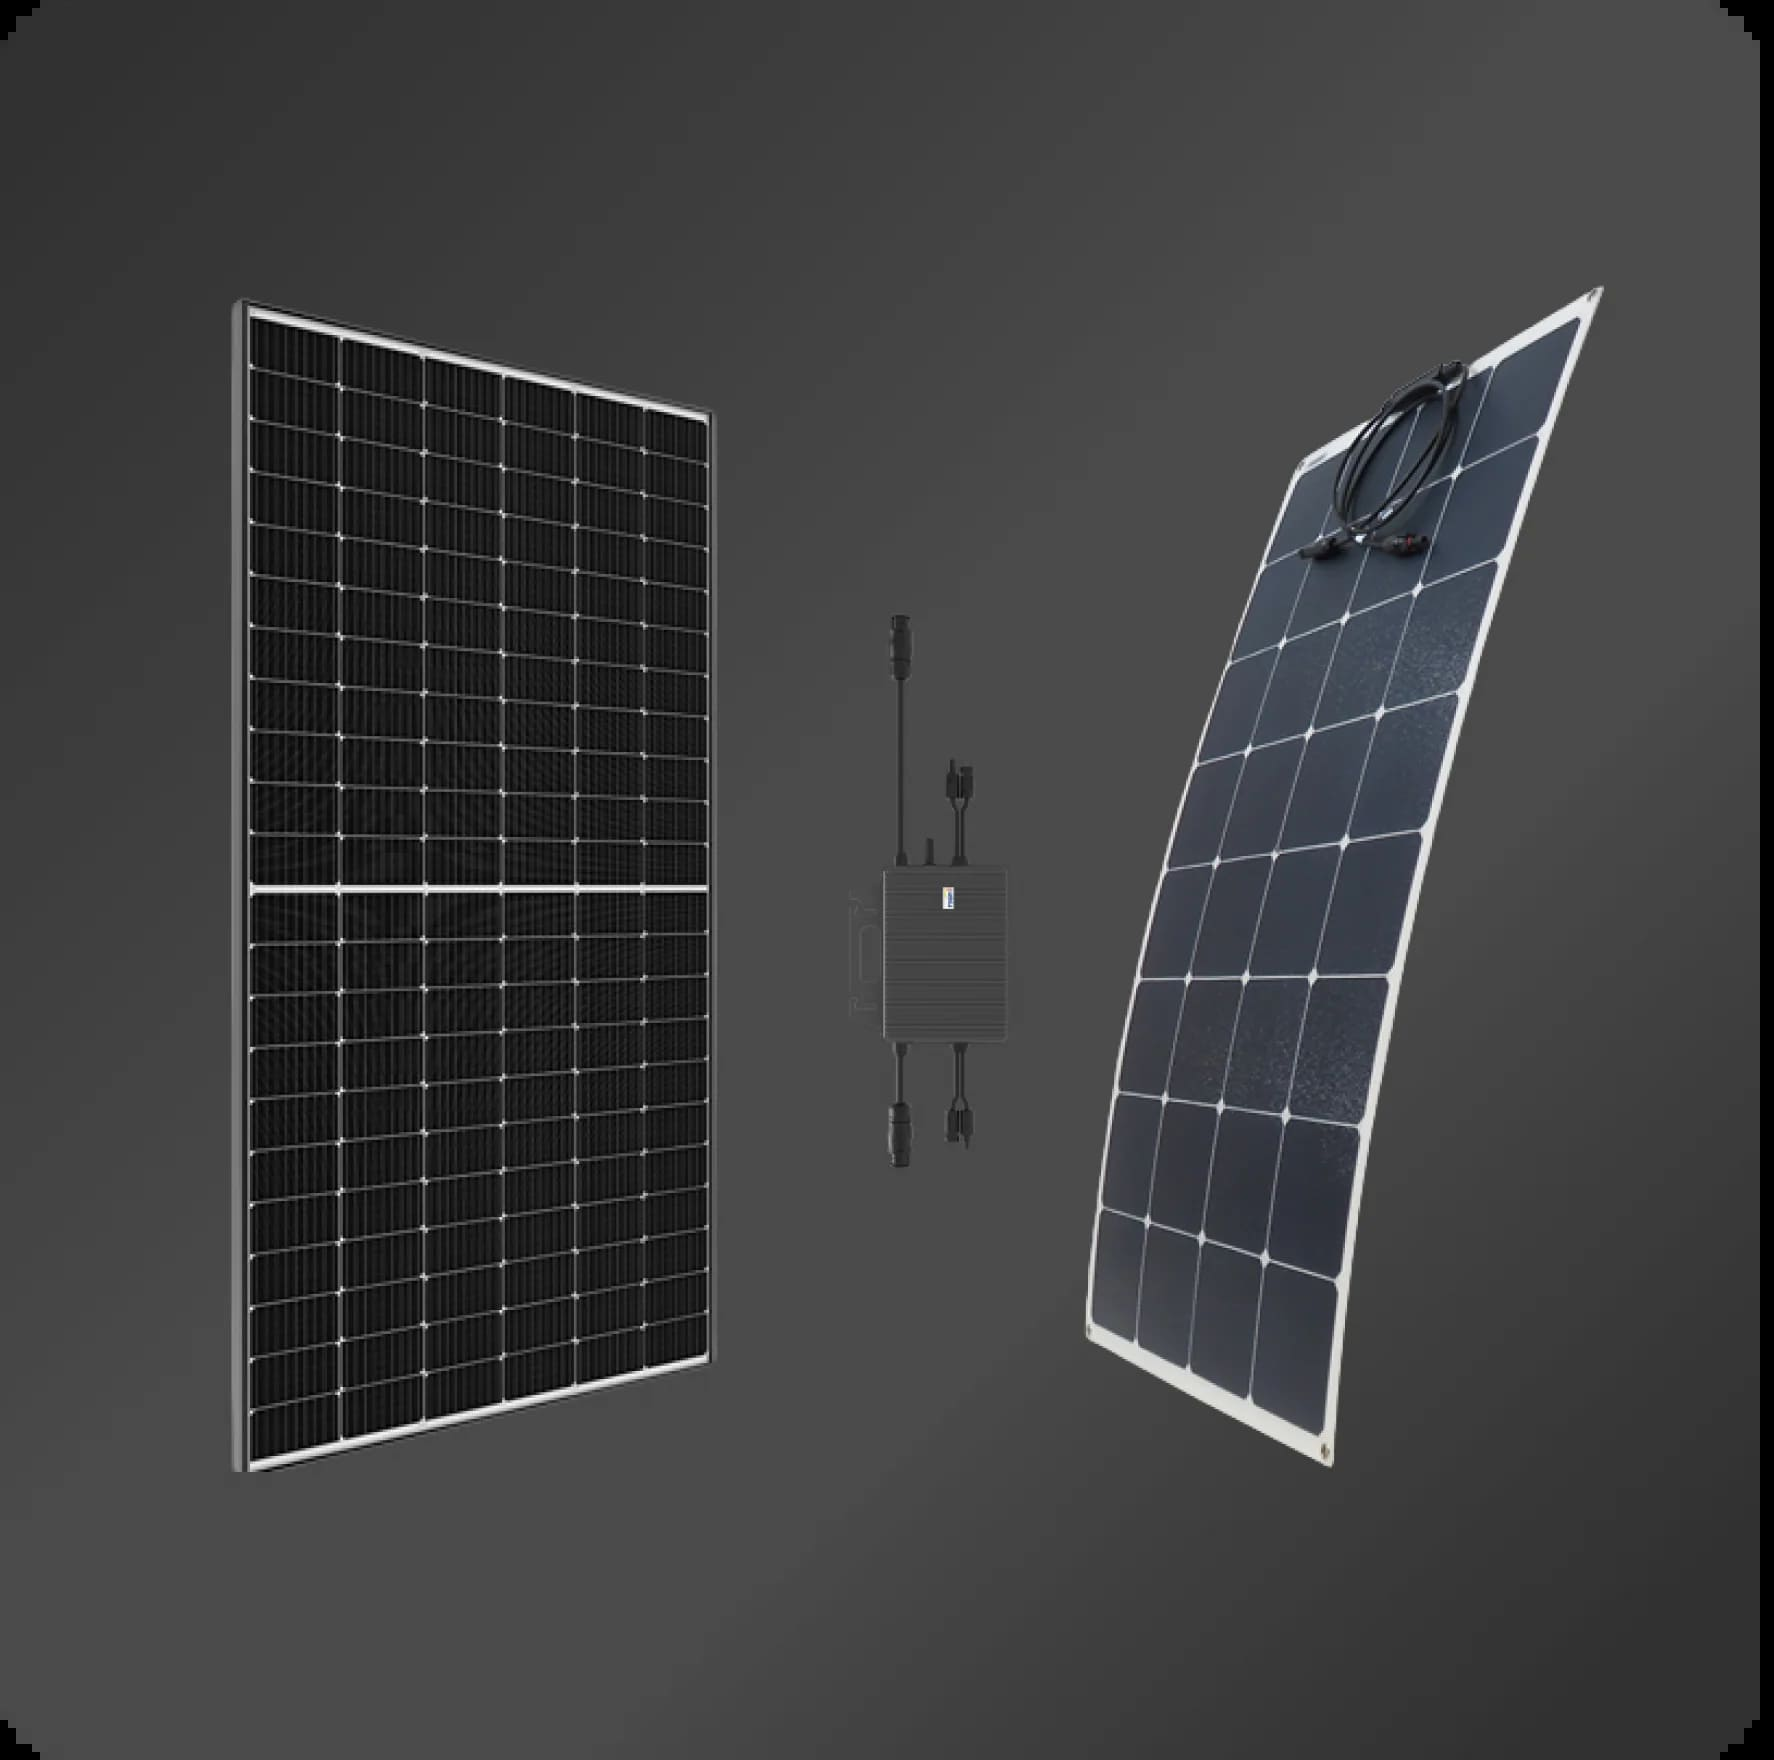 Las mejores ofertas en Paneles y kits solares